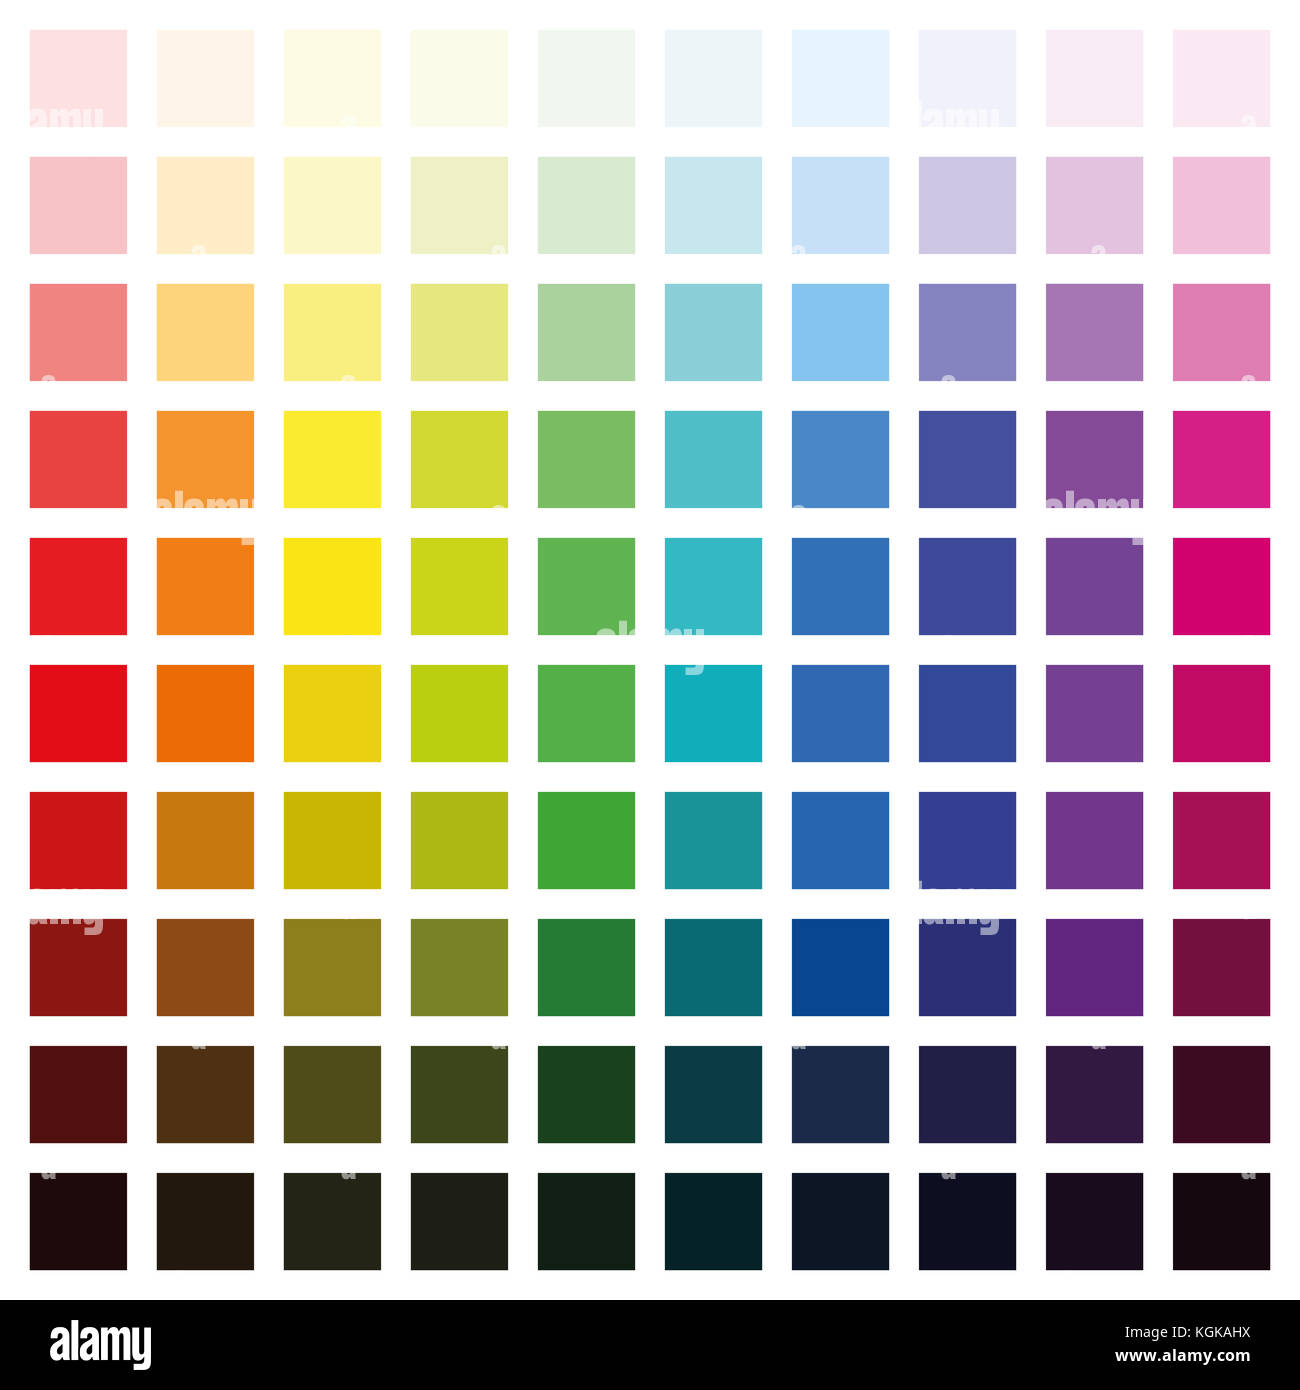 Farbspektrum Chart mit hundert verschiedene Farben in verschiedenen Sättigung von hell bis dunkel - quadratische Format Abbildung auf weißen Hintergrund. Stockfoto